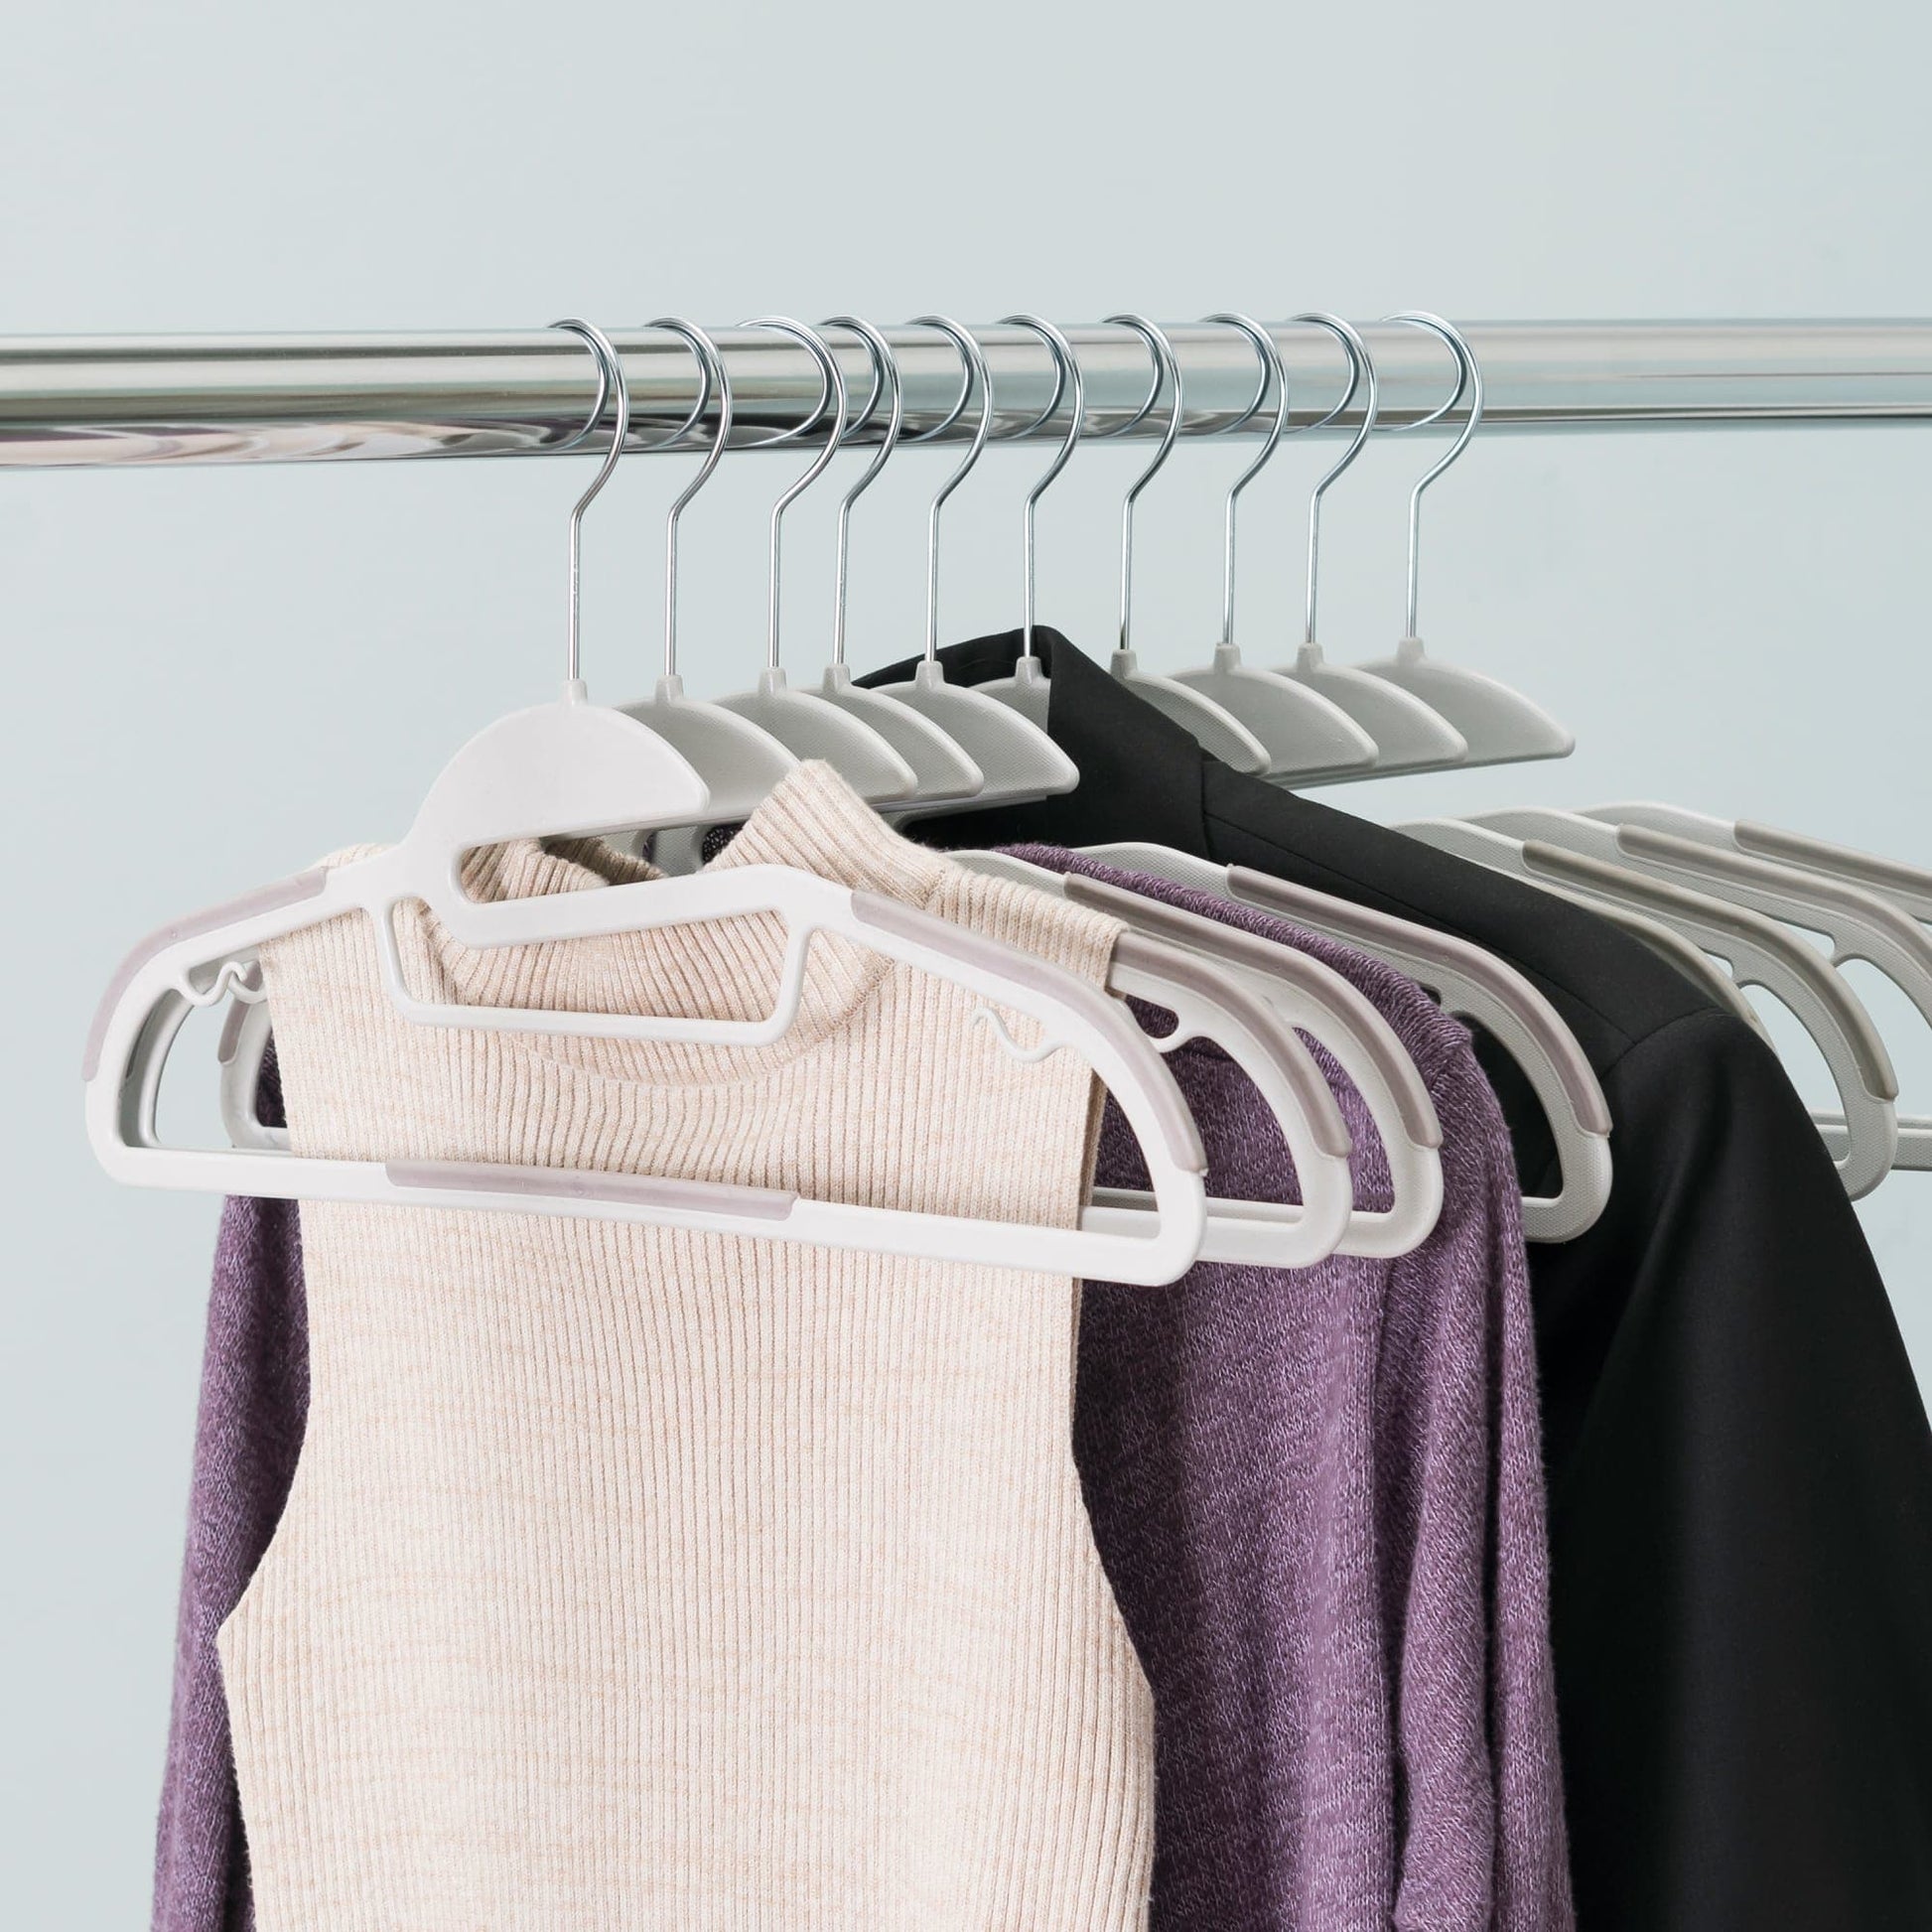 10 Piece Non-Slip Hangers, White | STORAGE ORGANIZATION | SHOP HOME ...